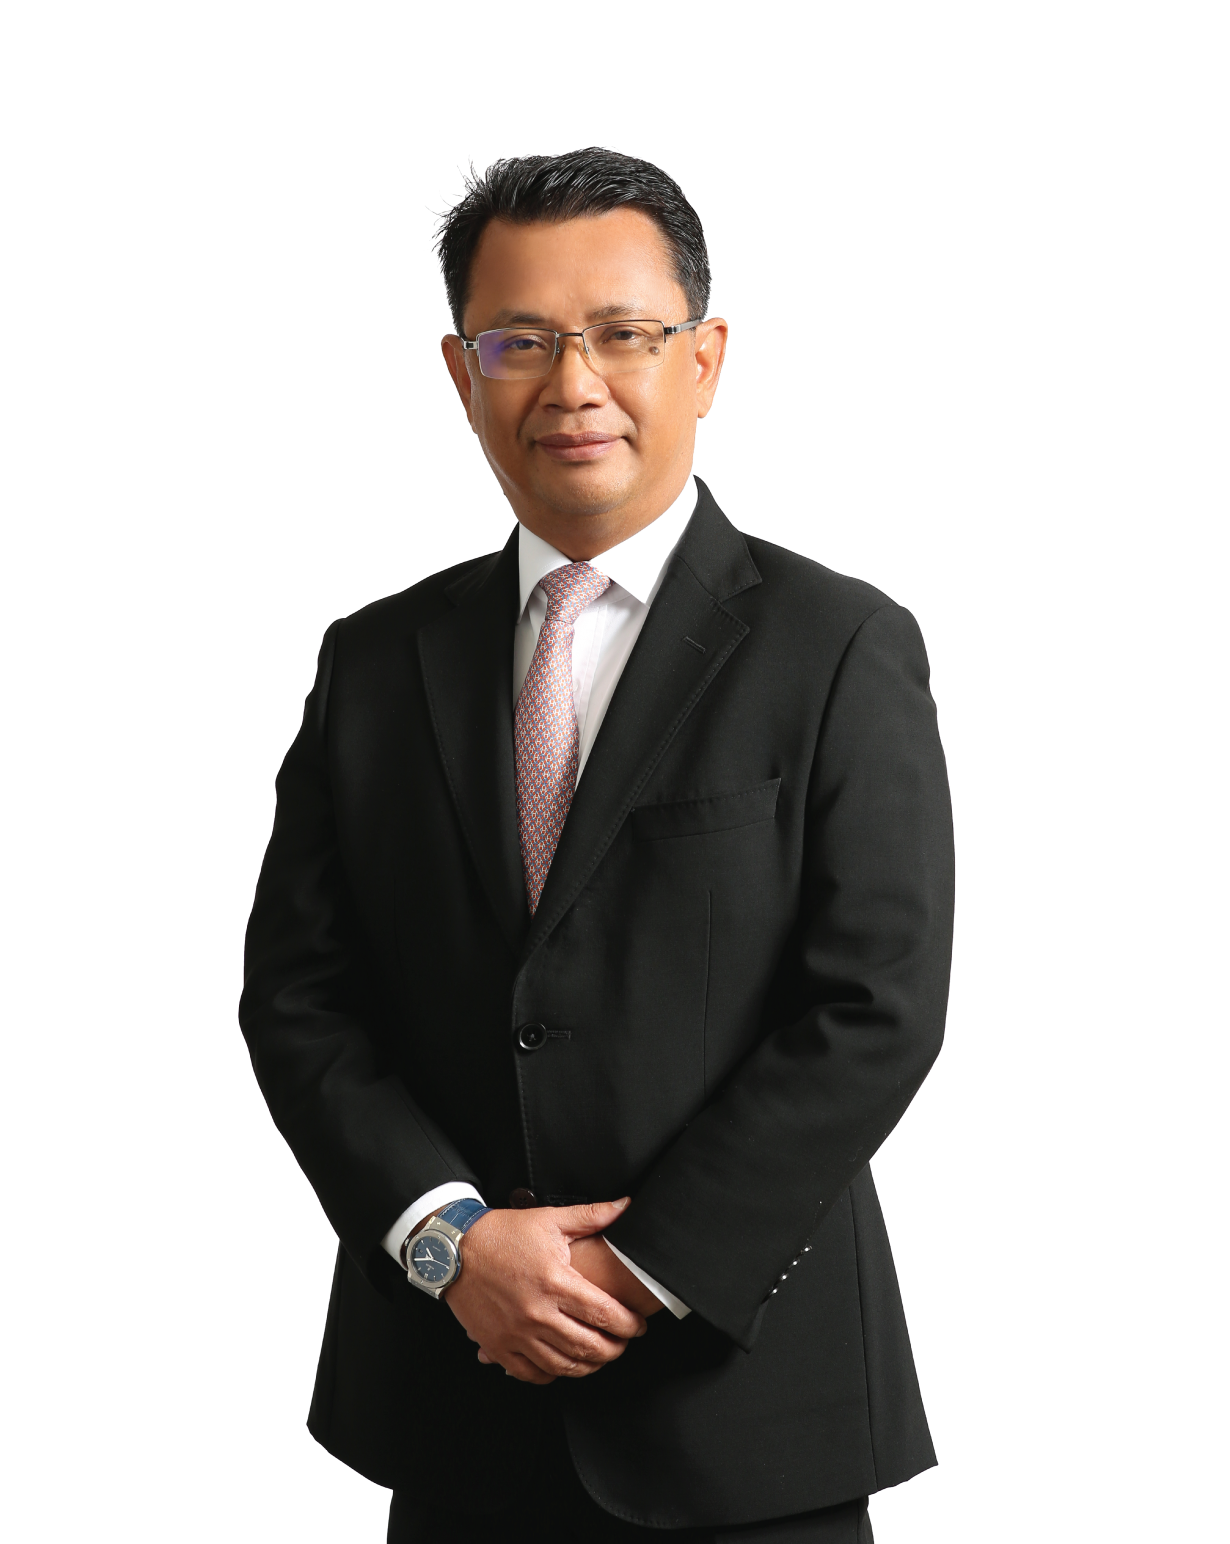 Tan Sri Dato’ Sri (Dr.) Mohamad Norza Zakaria – Key Senior Management